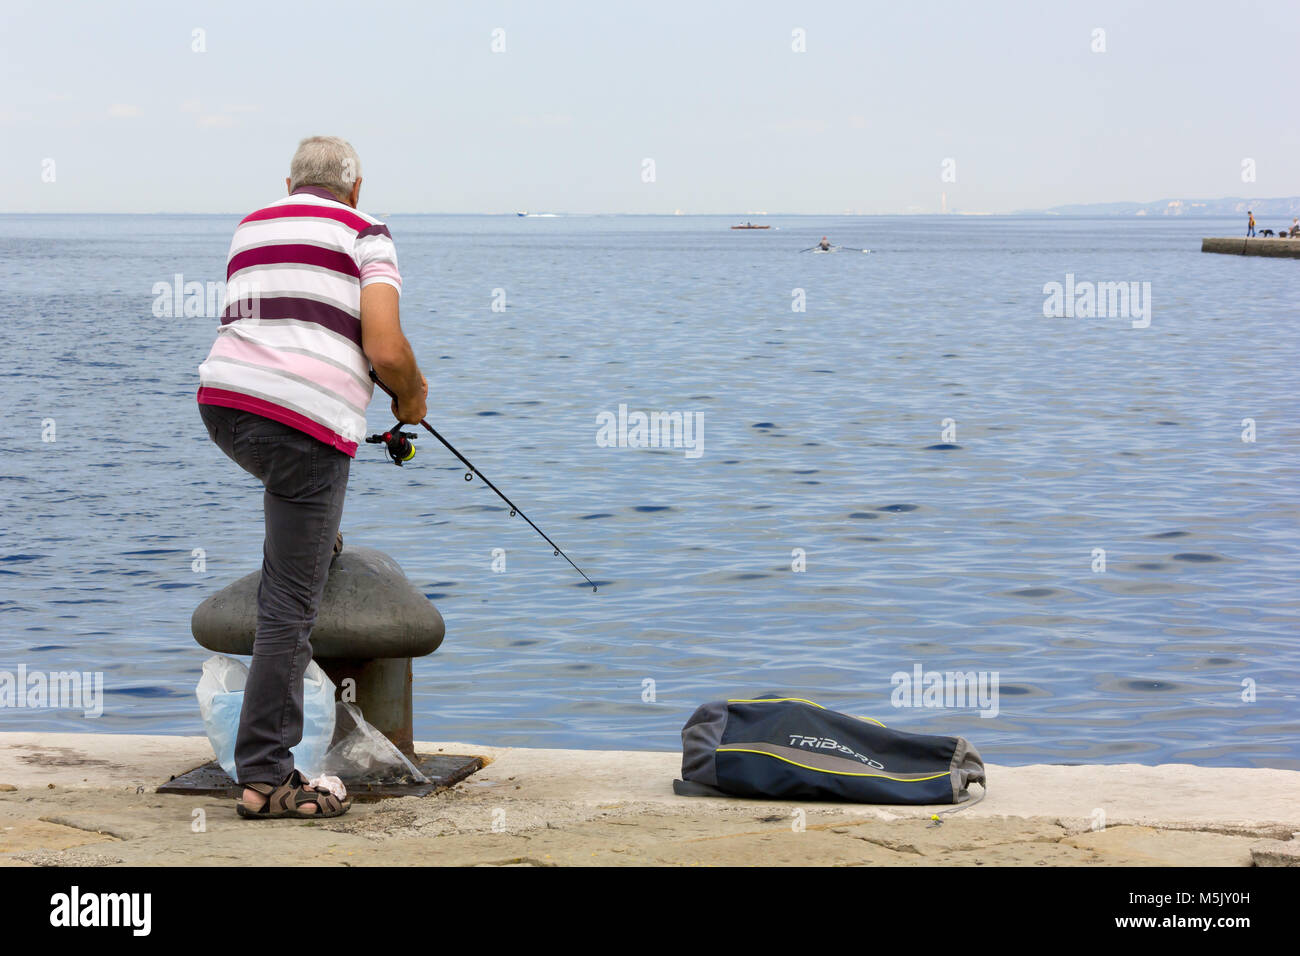 TRIESTE, Italie - 23 juin 2014 : l'homme vu de dos de la ville de pêche front de mer près d'une borne haute Banque D'Images